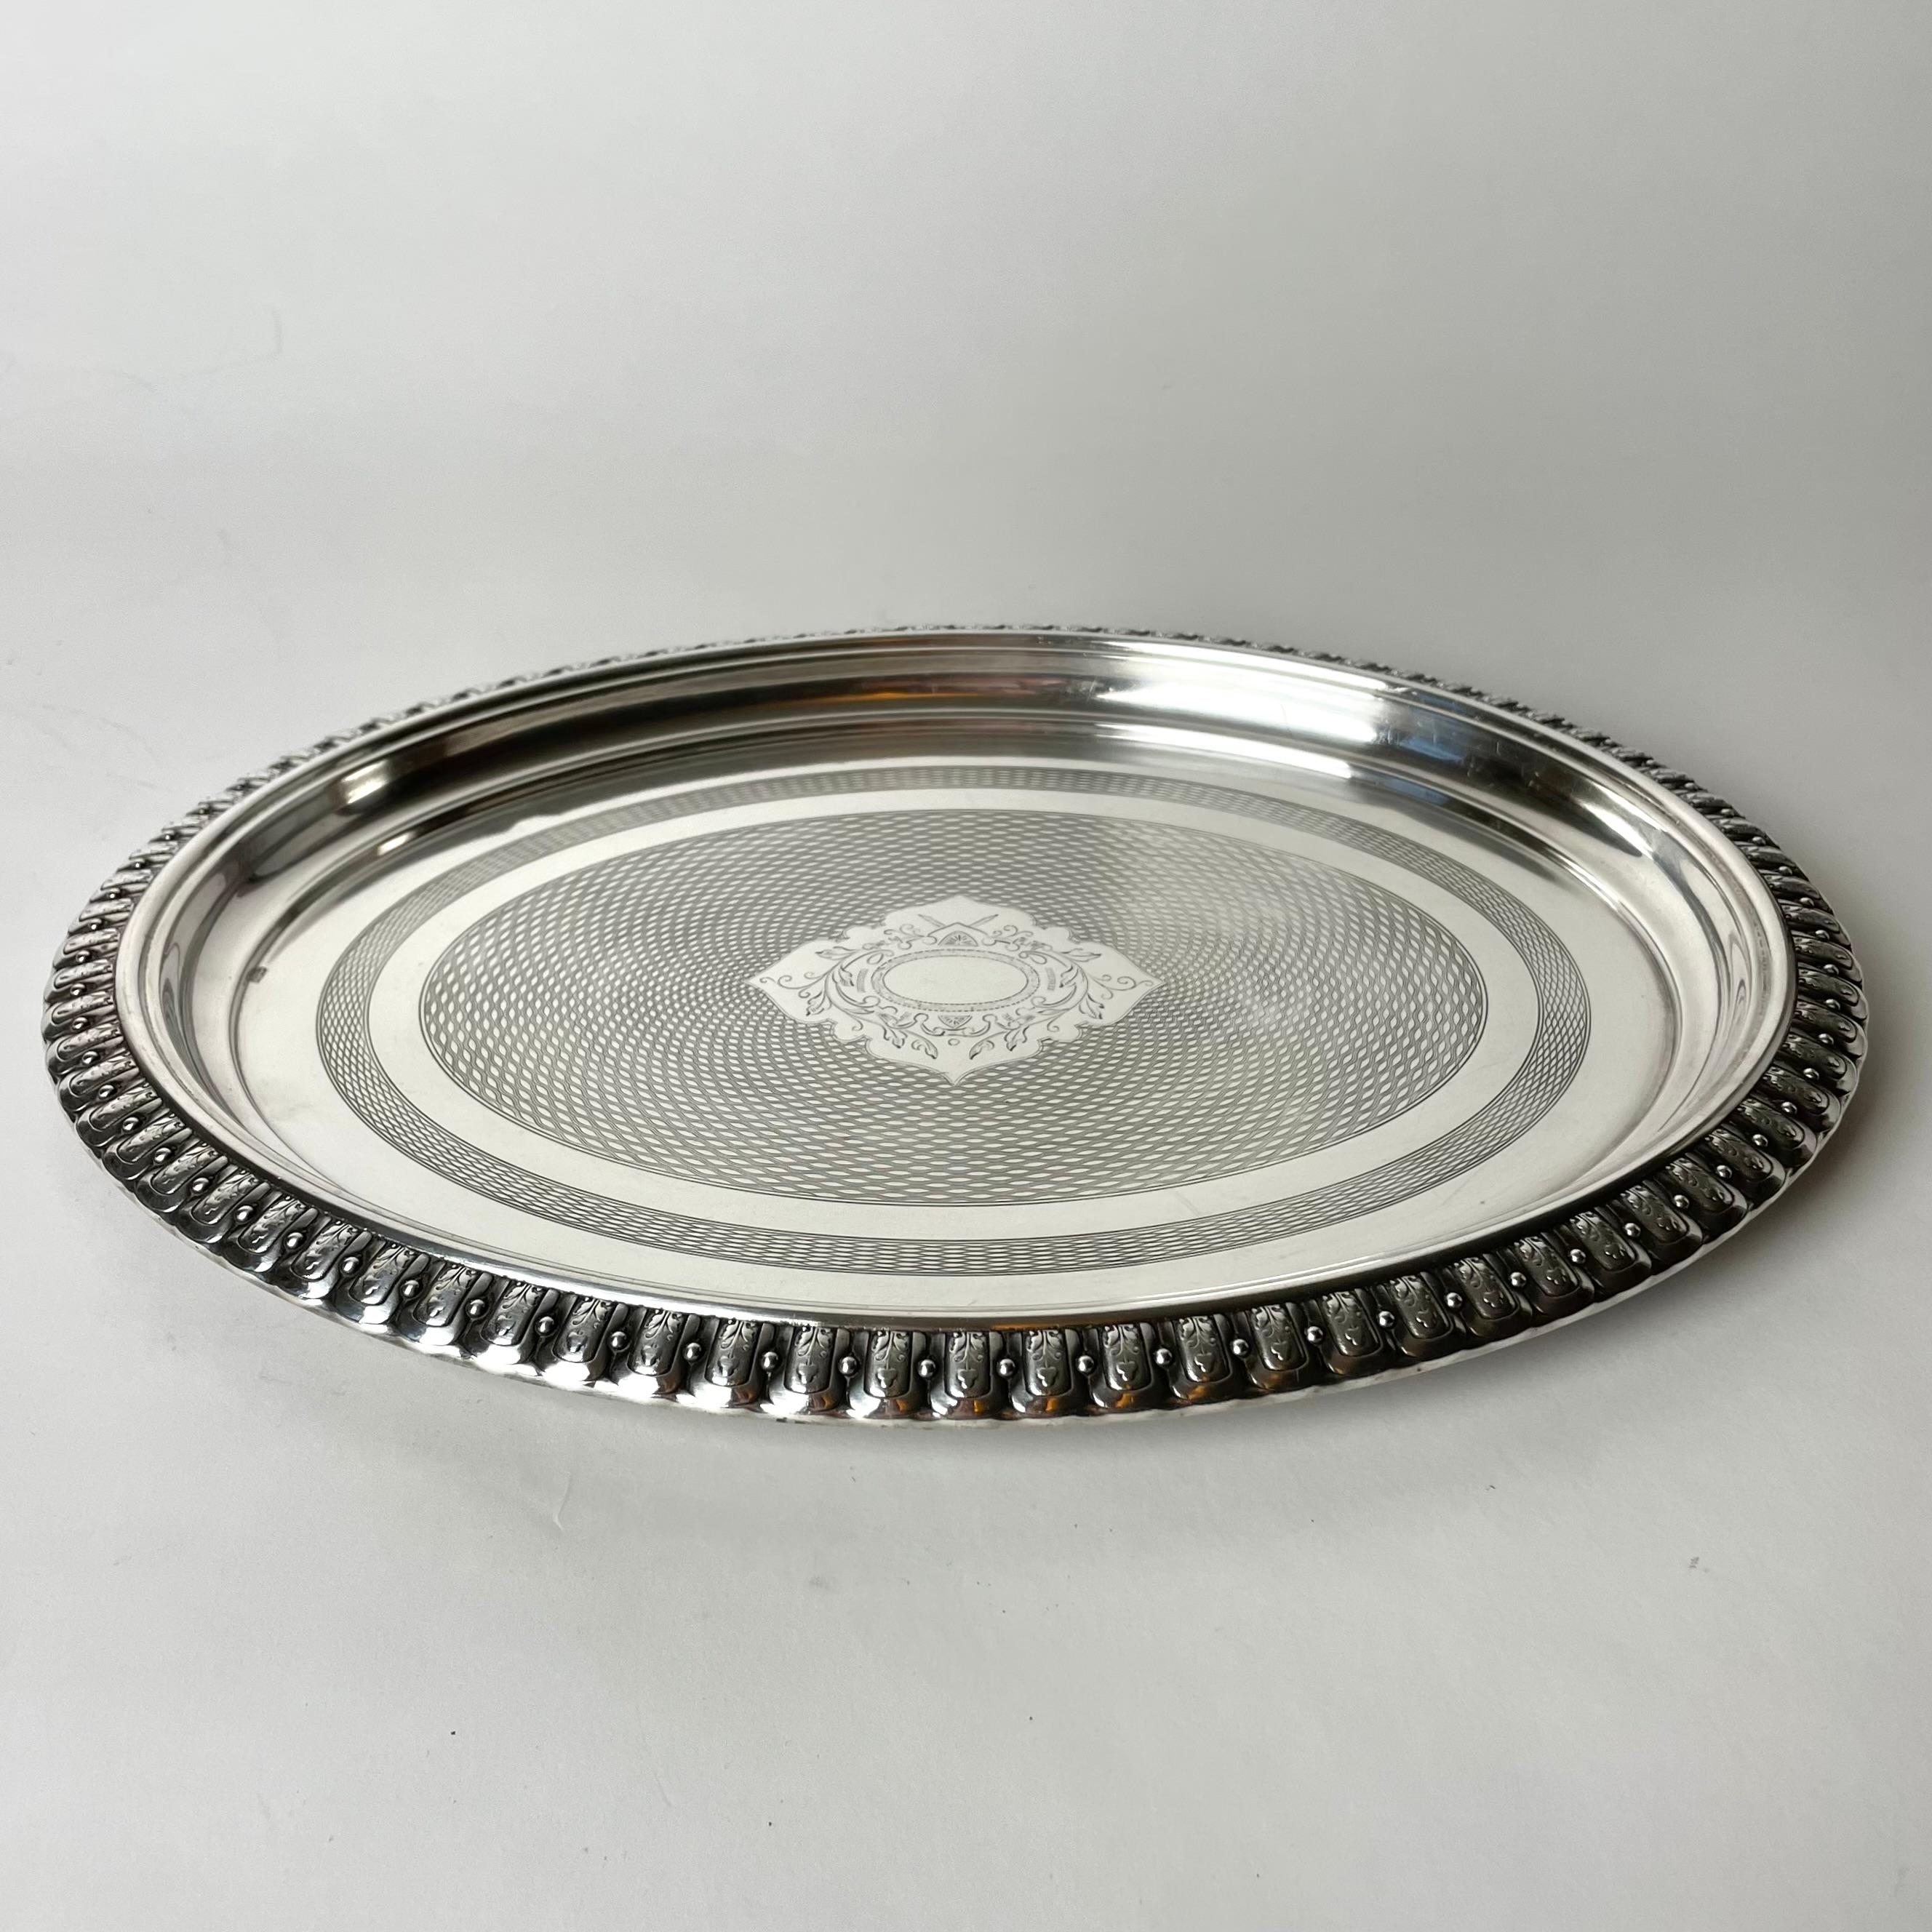 Elegant plateau en métal argenté fabriqué par WMF (Wurttembergische Metallwarenfabrik, Allemagne) à la fin du 19e siècle. Belle décoration et haute qualité.


Usure correspondant à l'âge et à l'usage. 